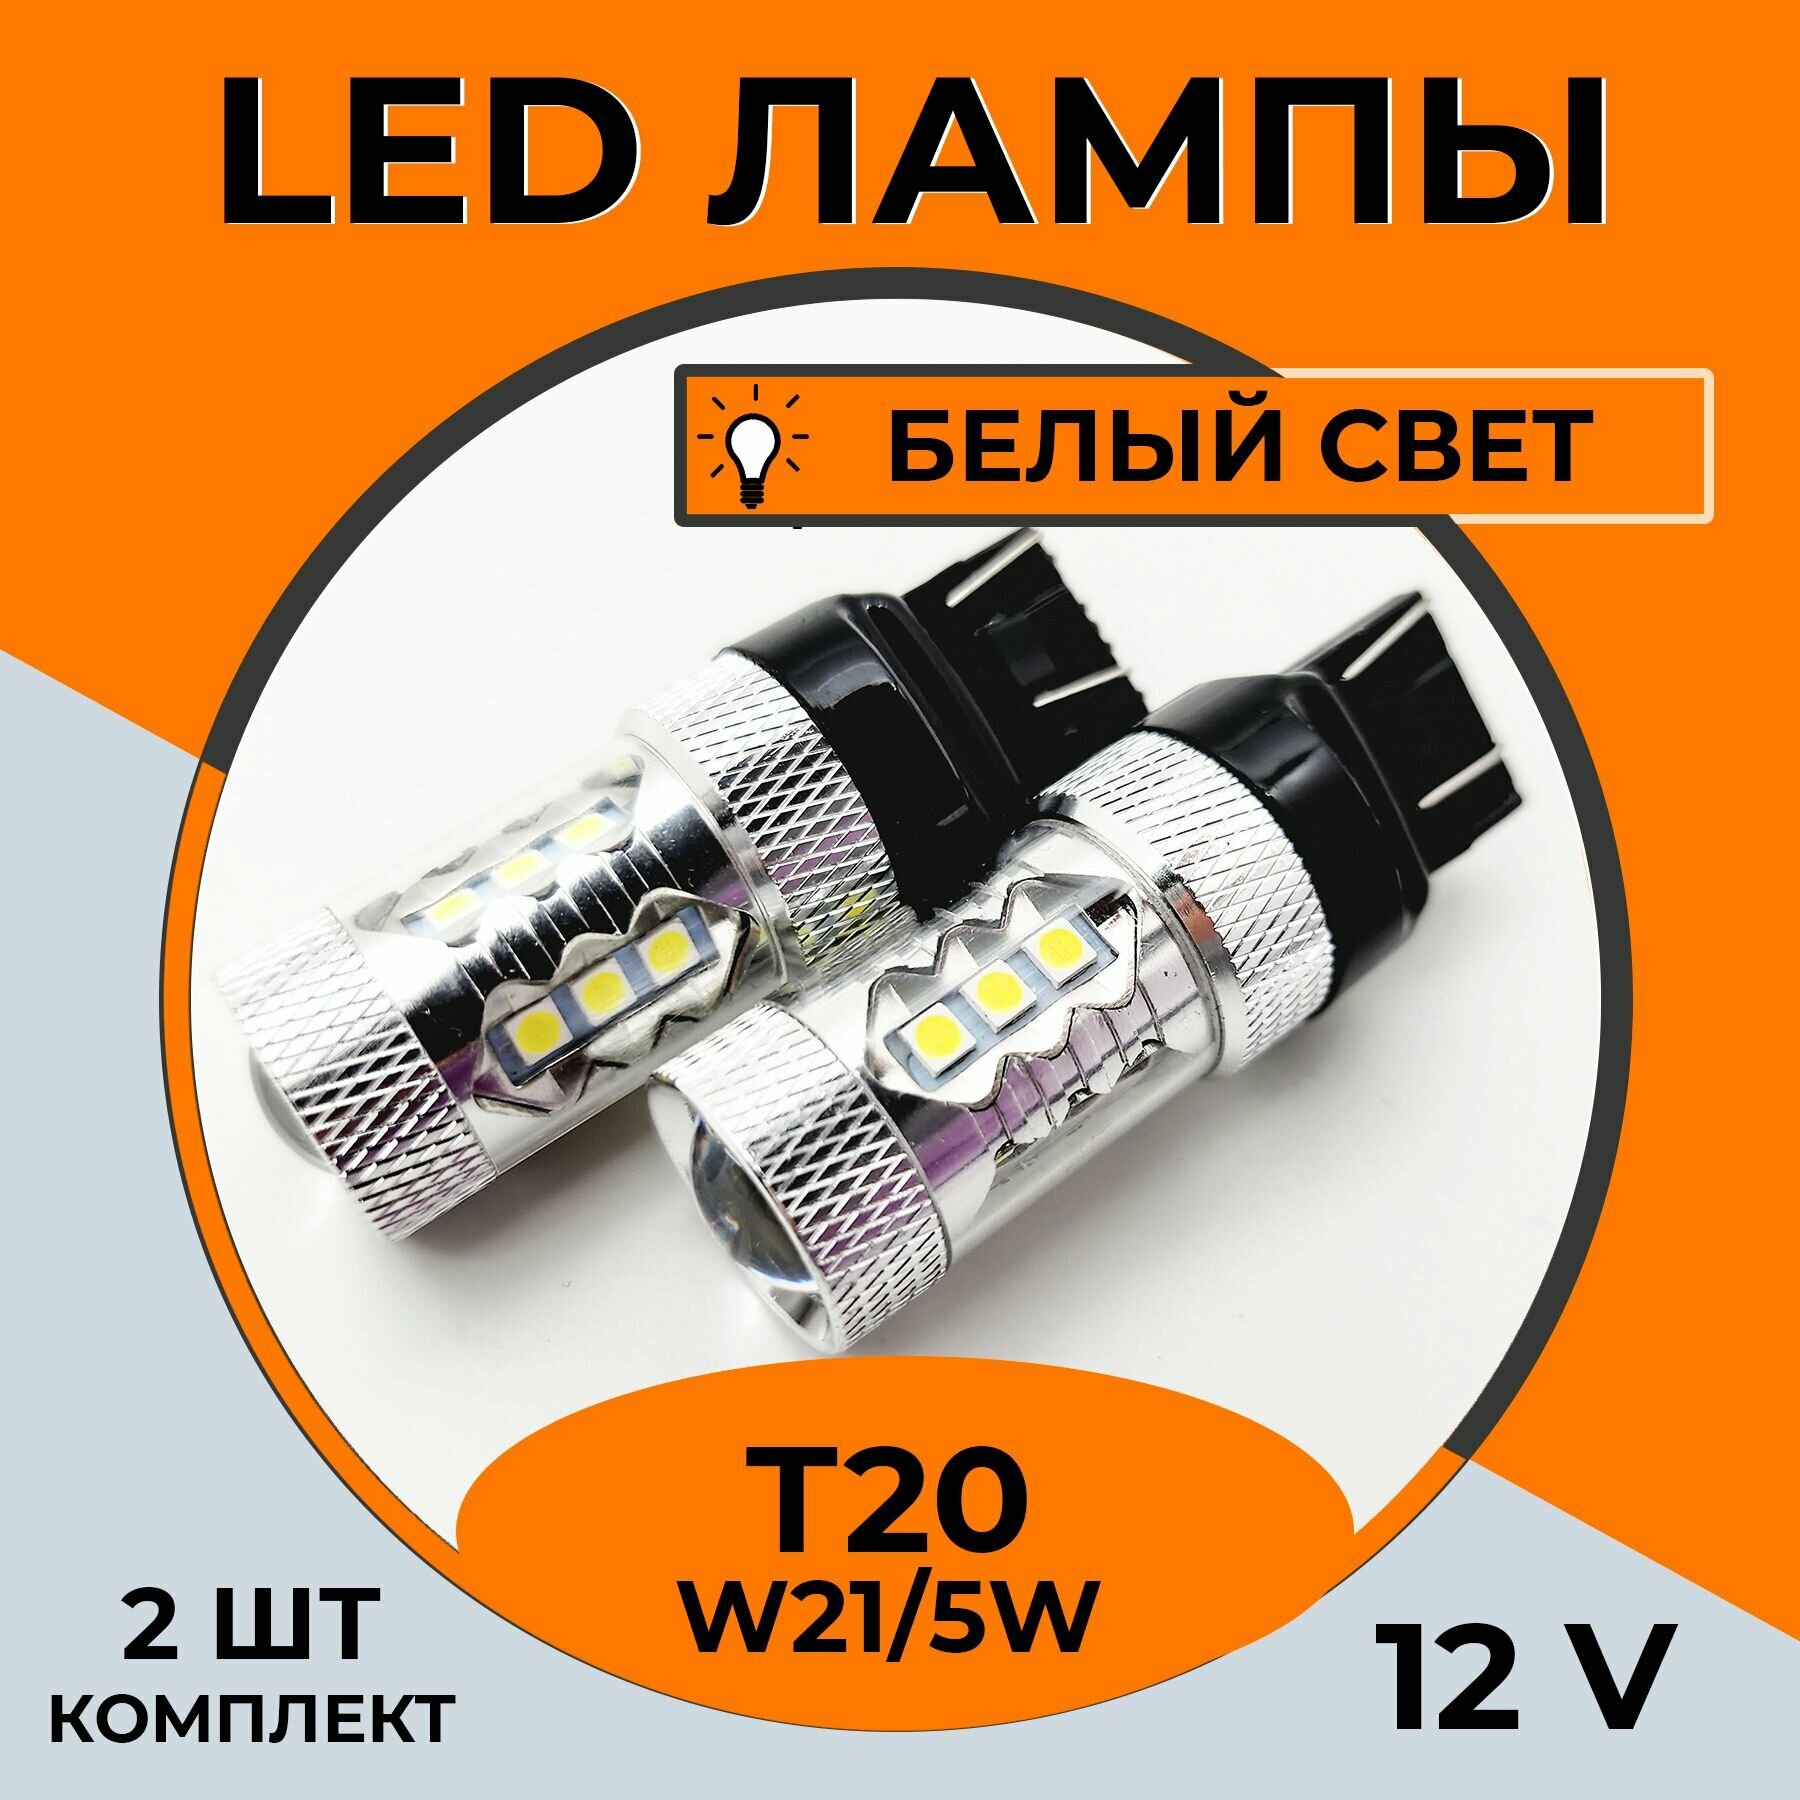 Автомобильная светодиодная LED лампа T20 W21/5W для габаритных огней, ДХО, 12в белый свет, 2 шт